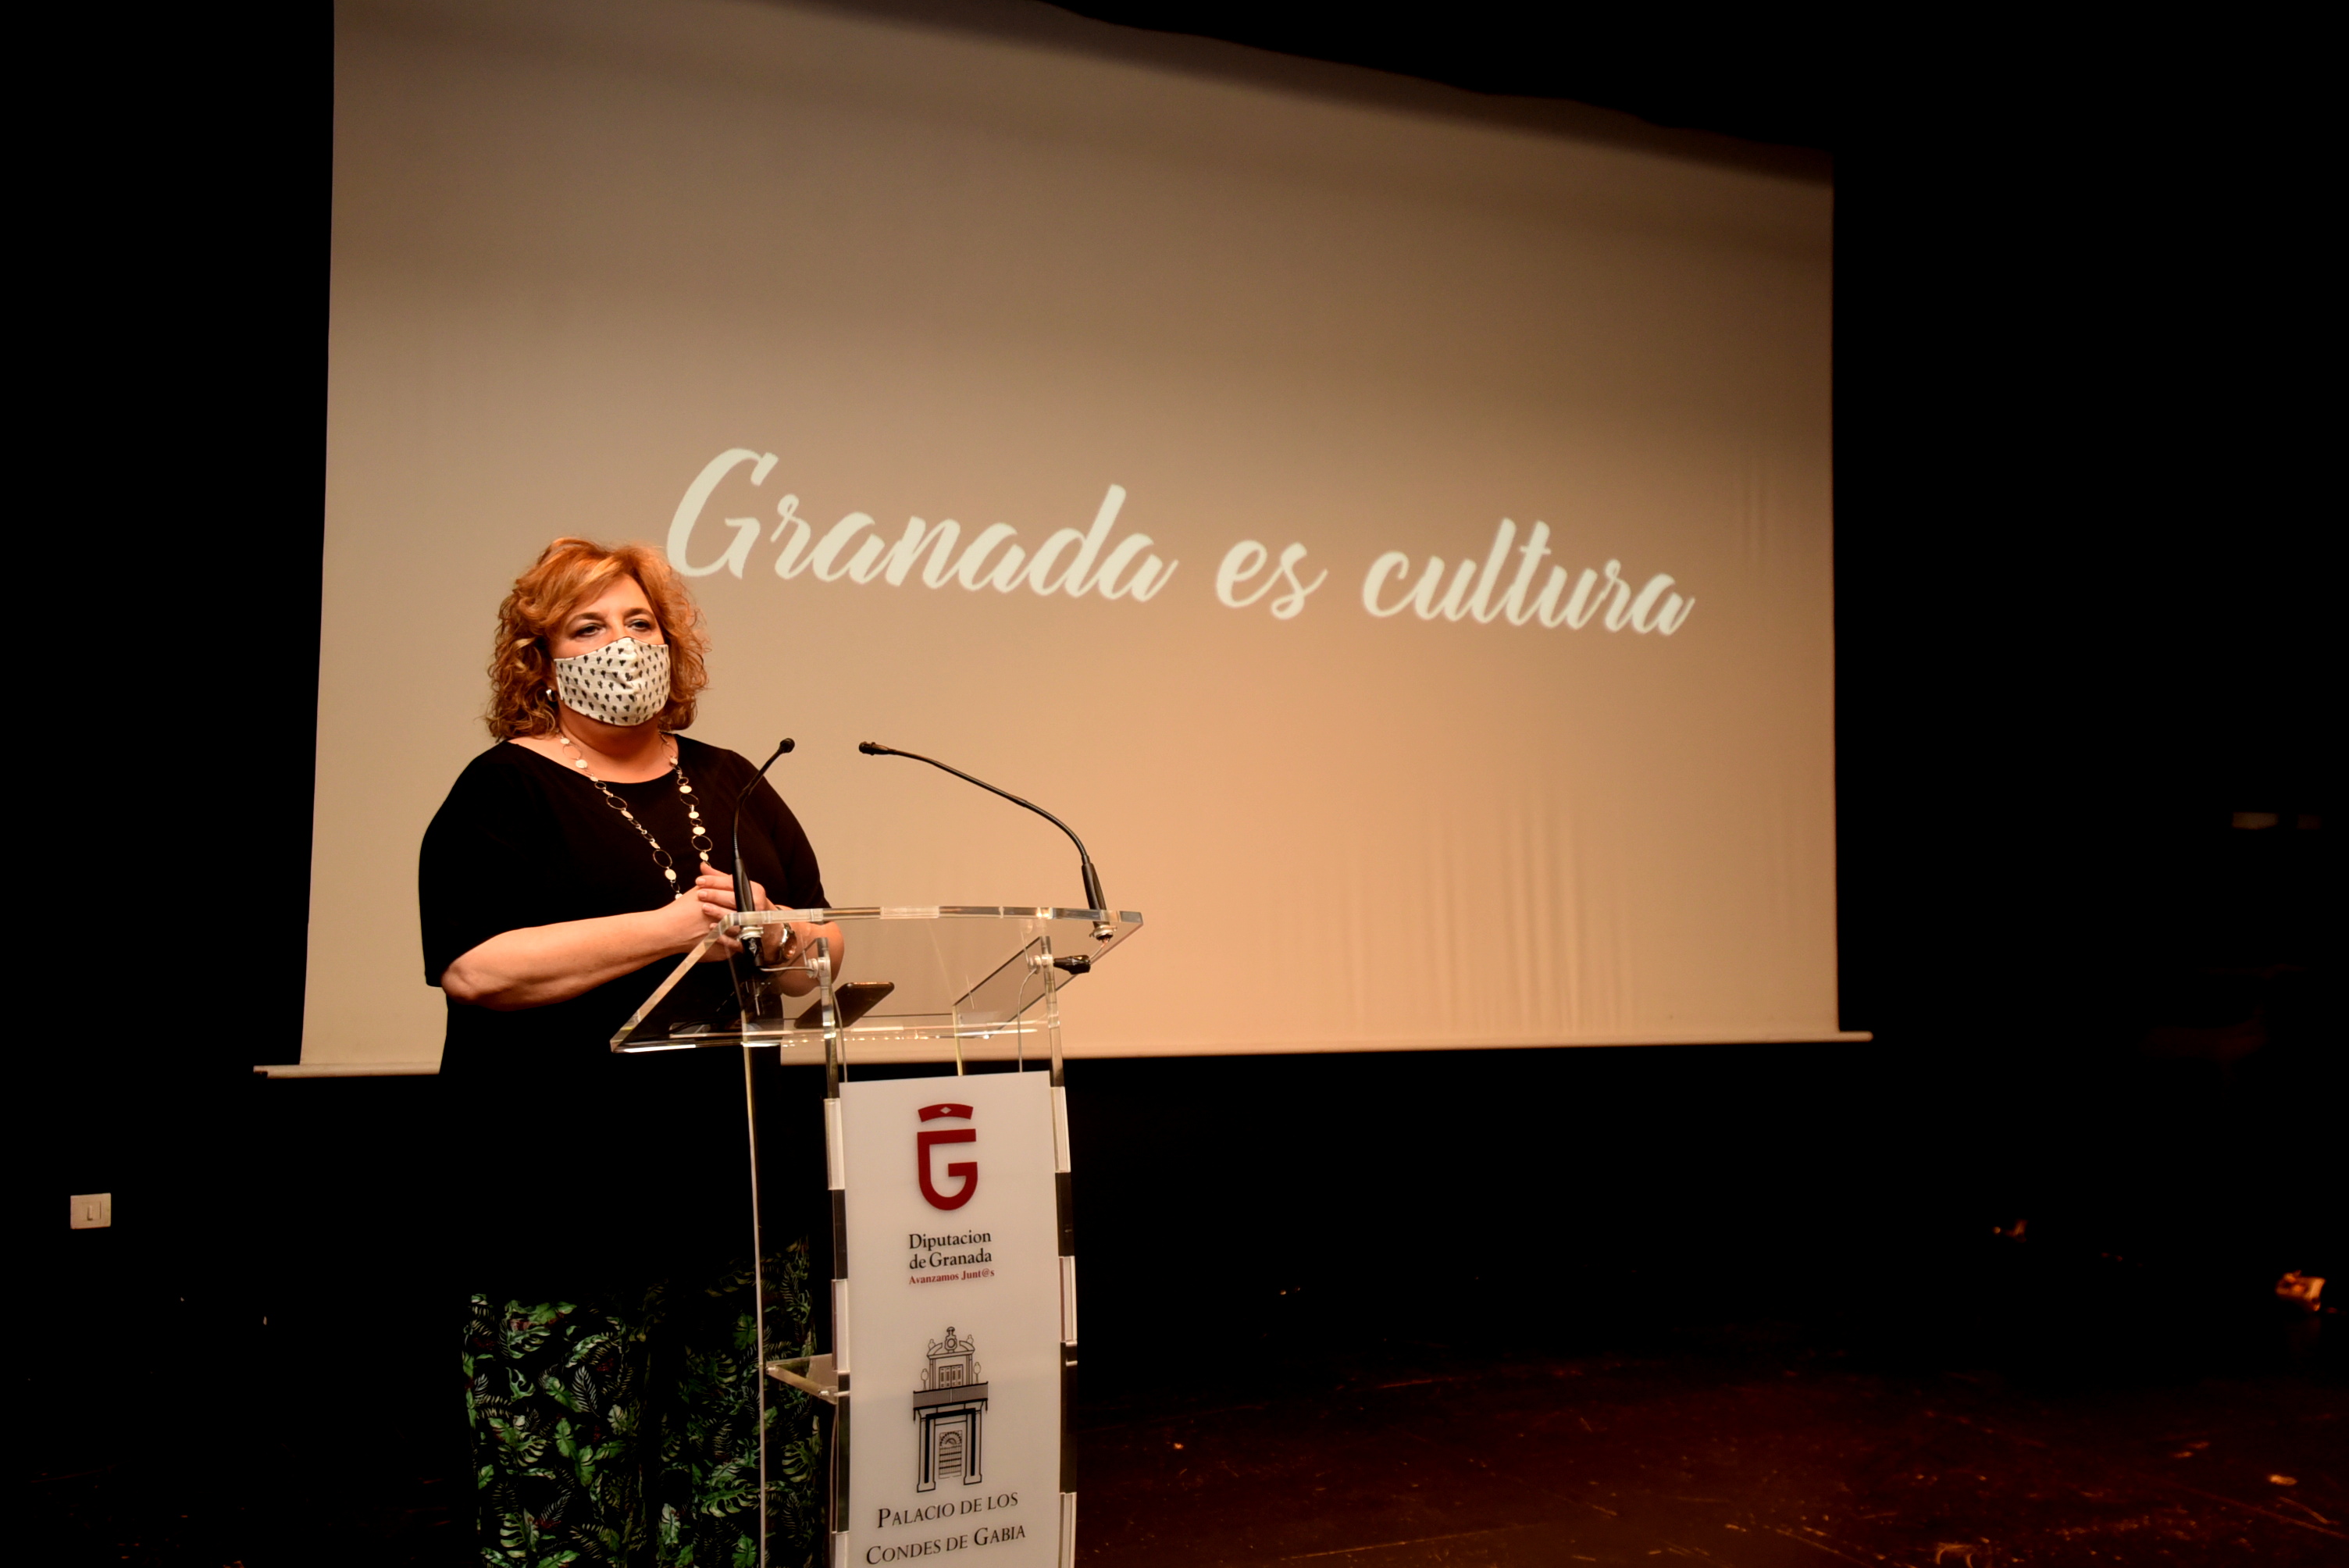 Diputación lanza una campaña de apoyo a la industria cultural granadina